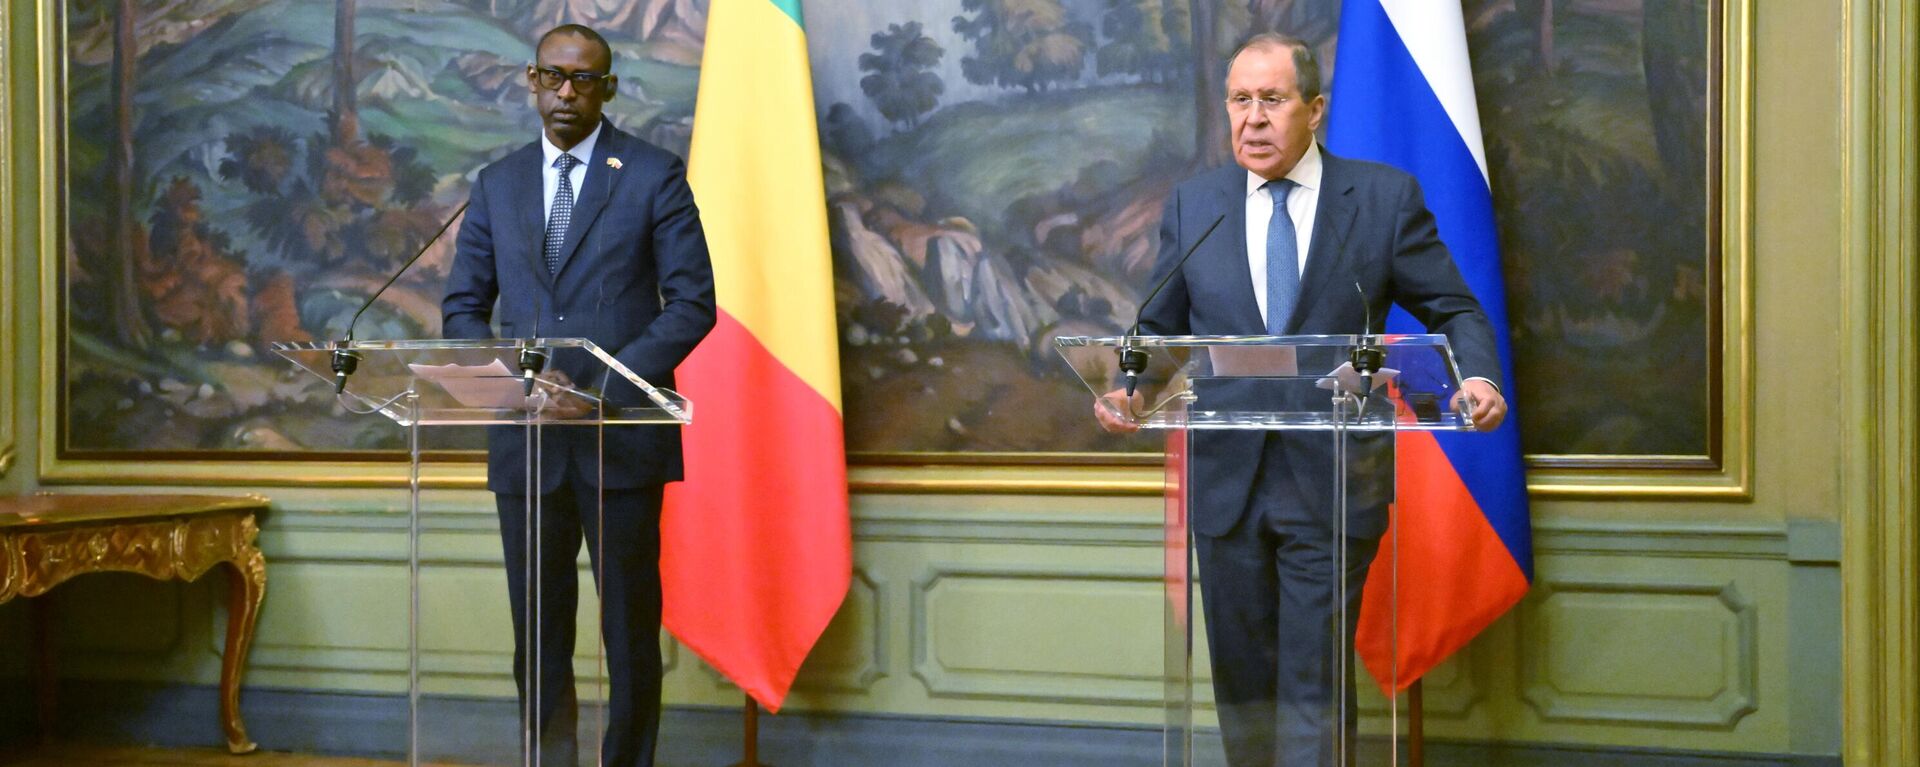 Abdoulaye Diop (à esquerda) e Sergei Lavrov (à direita), ministros das Relações Exteriores do Mali e da Rússia, respetivamente, após encontro em Moscou, Rússia, 20 de maio de 2022 - Sputnik Brasil, 1920, 20.05.2022